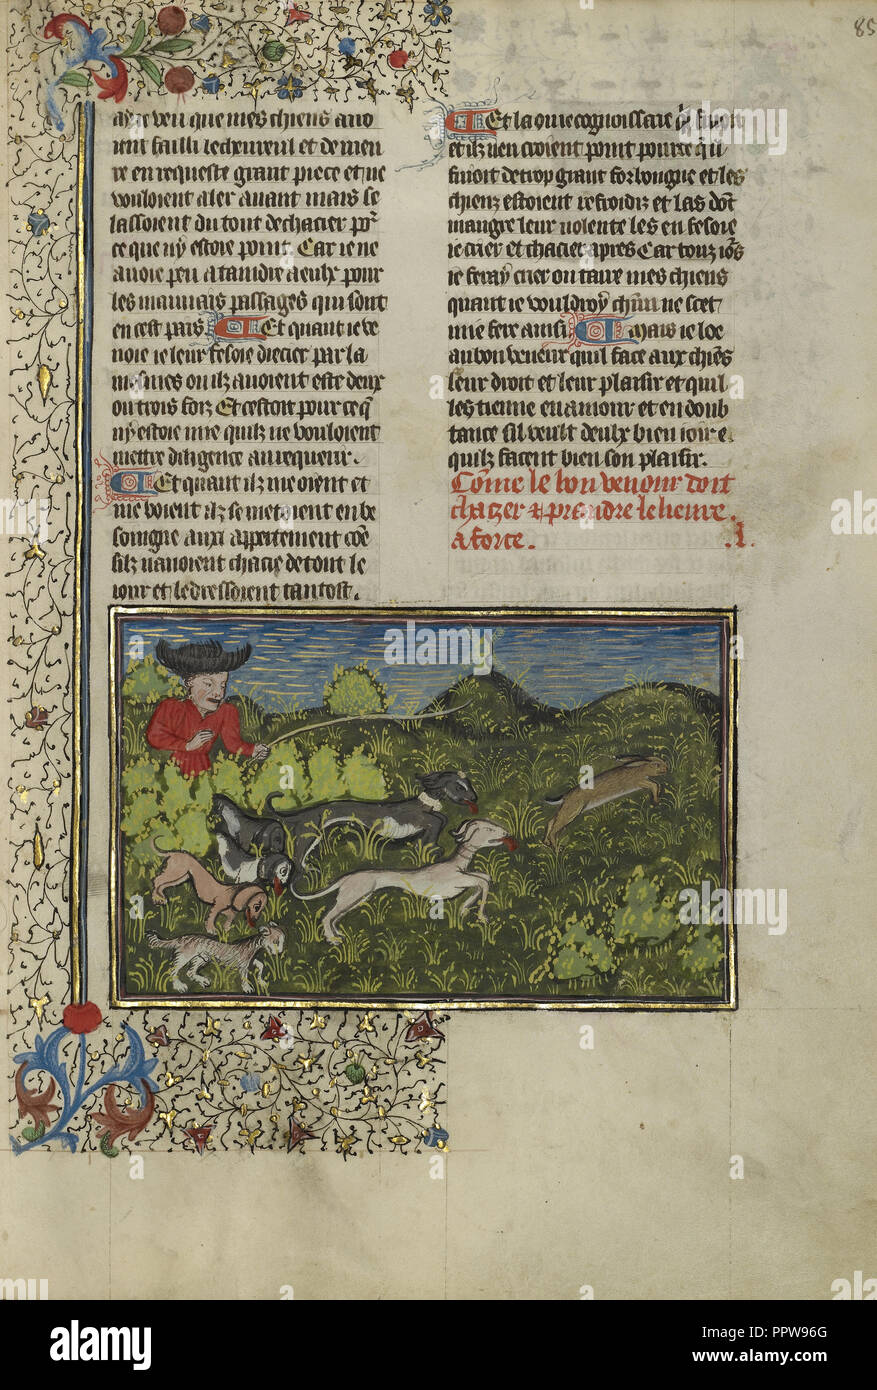 Le chasseur et le chien poursuivant un lièvre ; Bretagne, France ; environ 1430 - 1440 Tempera ; couleurs, peinture or, argent, peinture et feuille d'or Banque D'Images